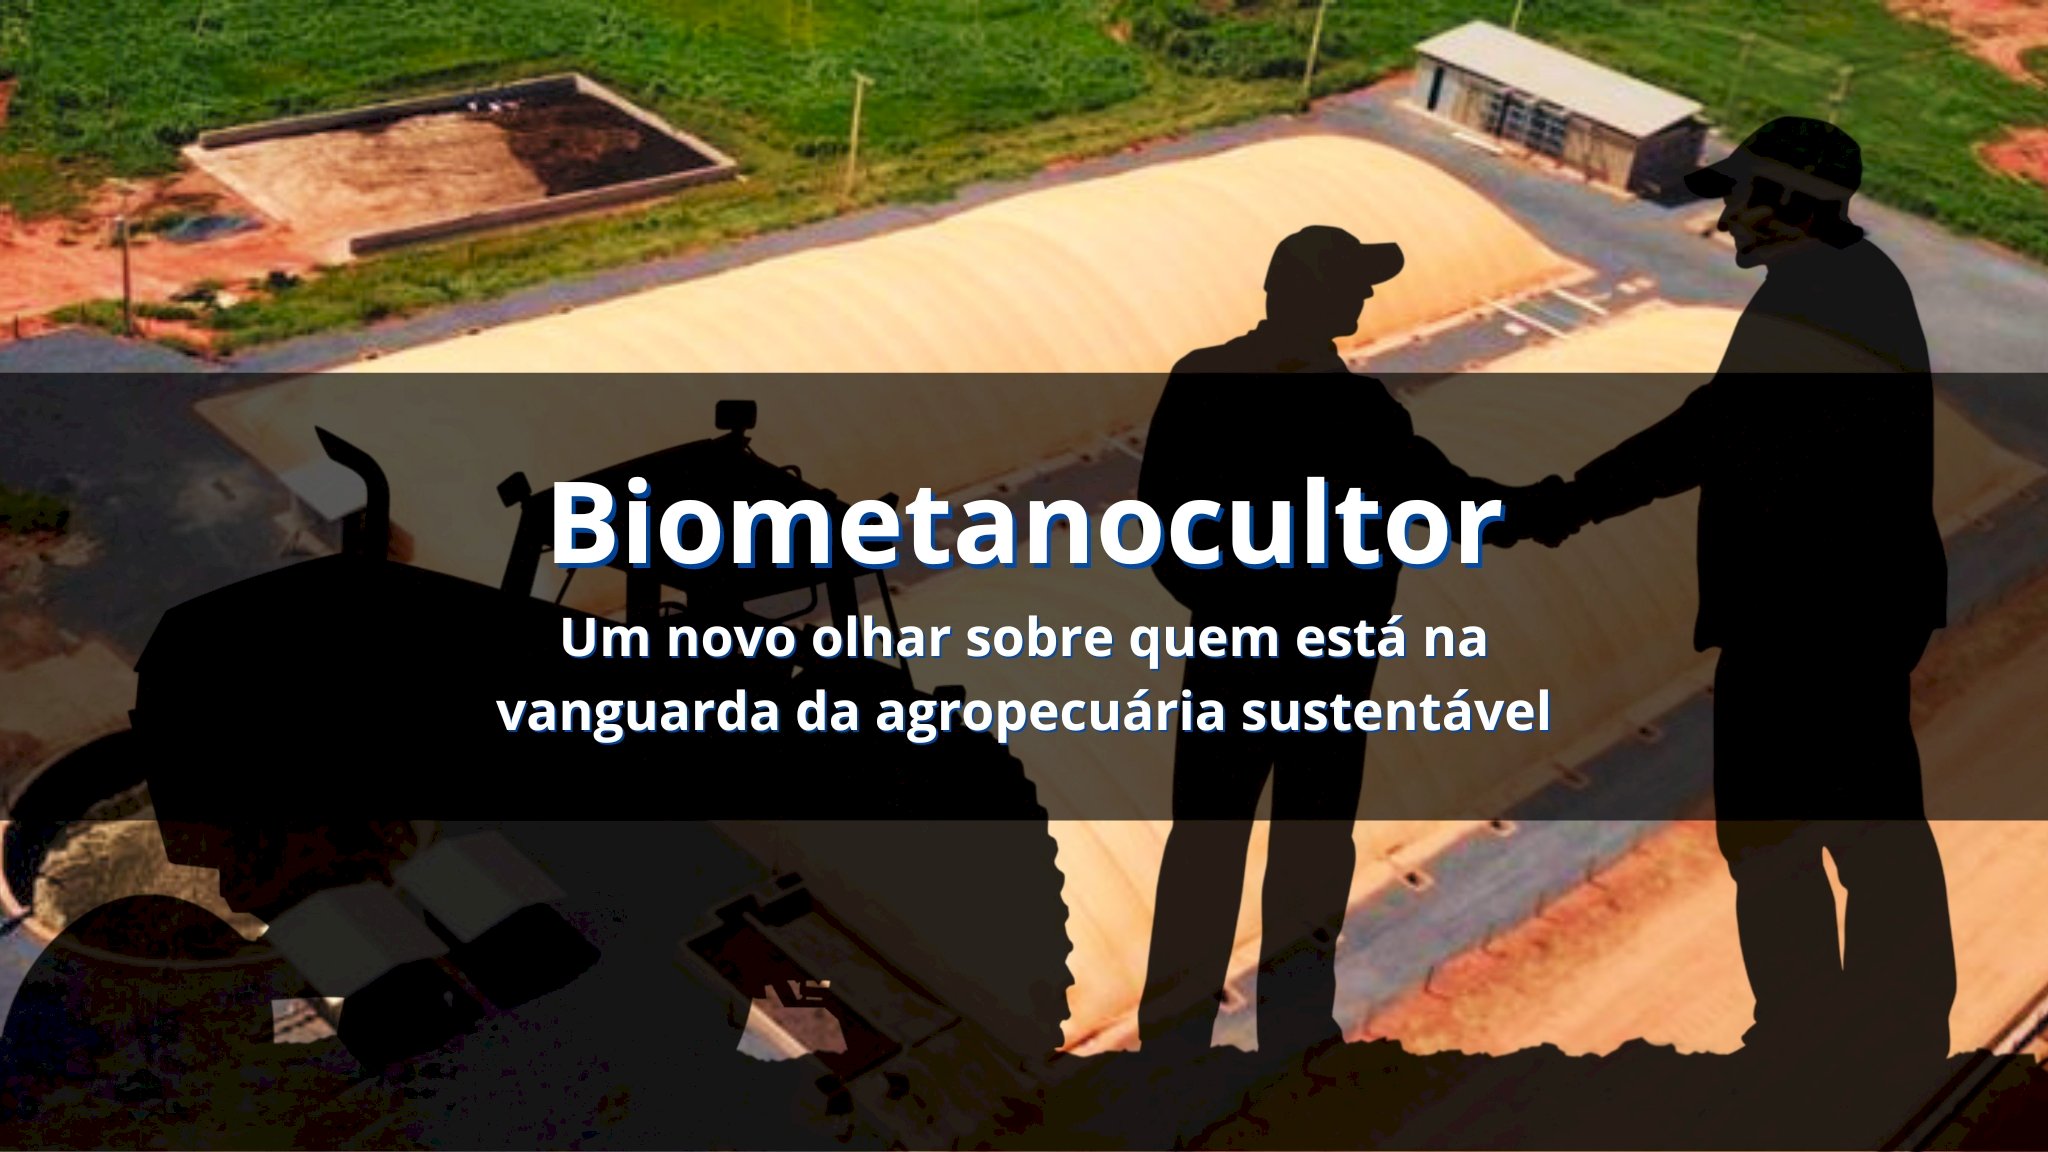 Biometanocultor - Um novo olhar sobre quem está na vanguarda da agropecuária sustentável